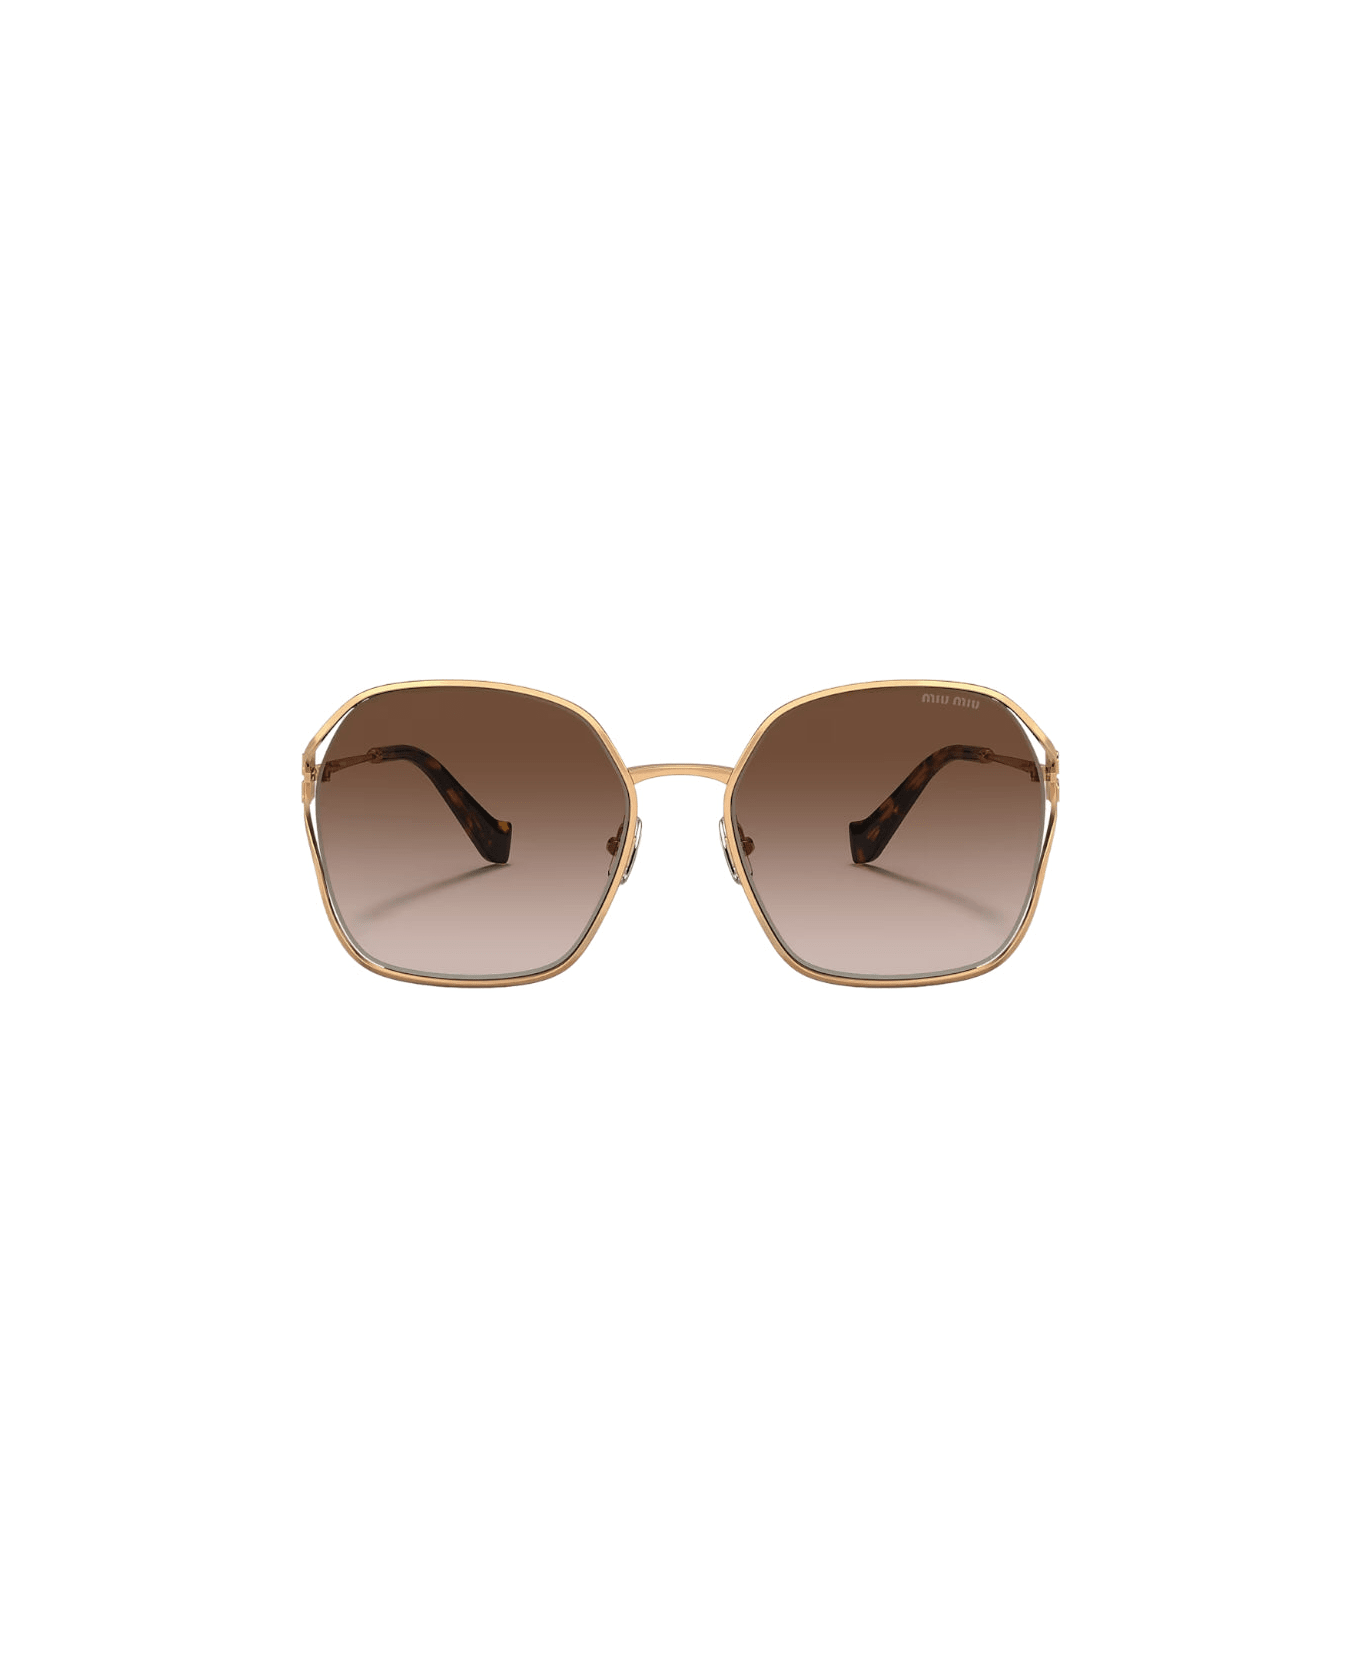 Miu Miu 0mu 52ws - Gold Sunglasses